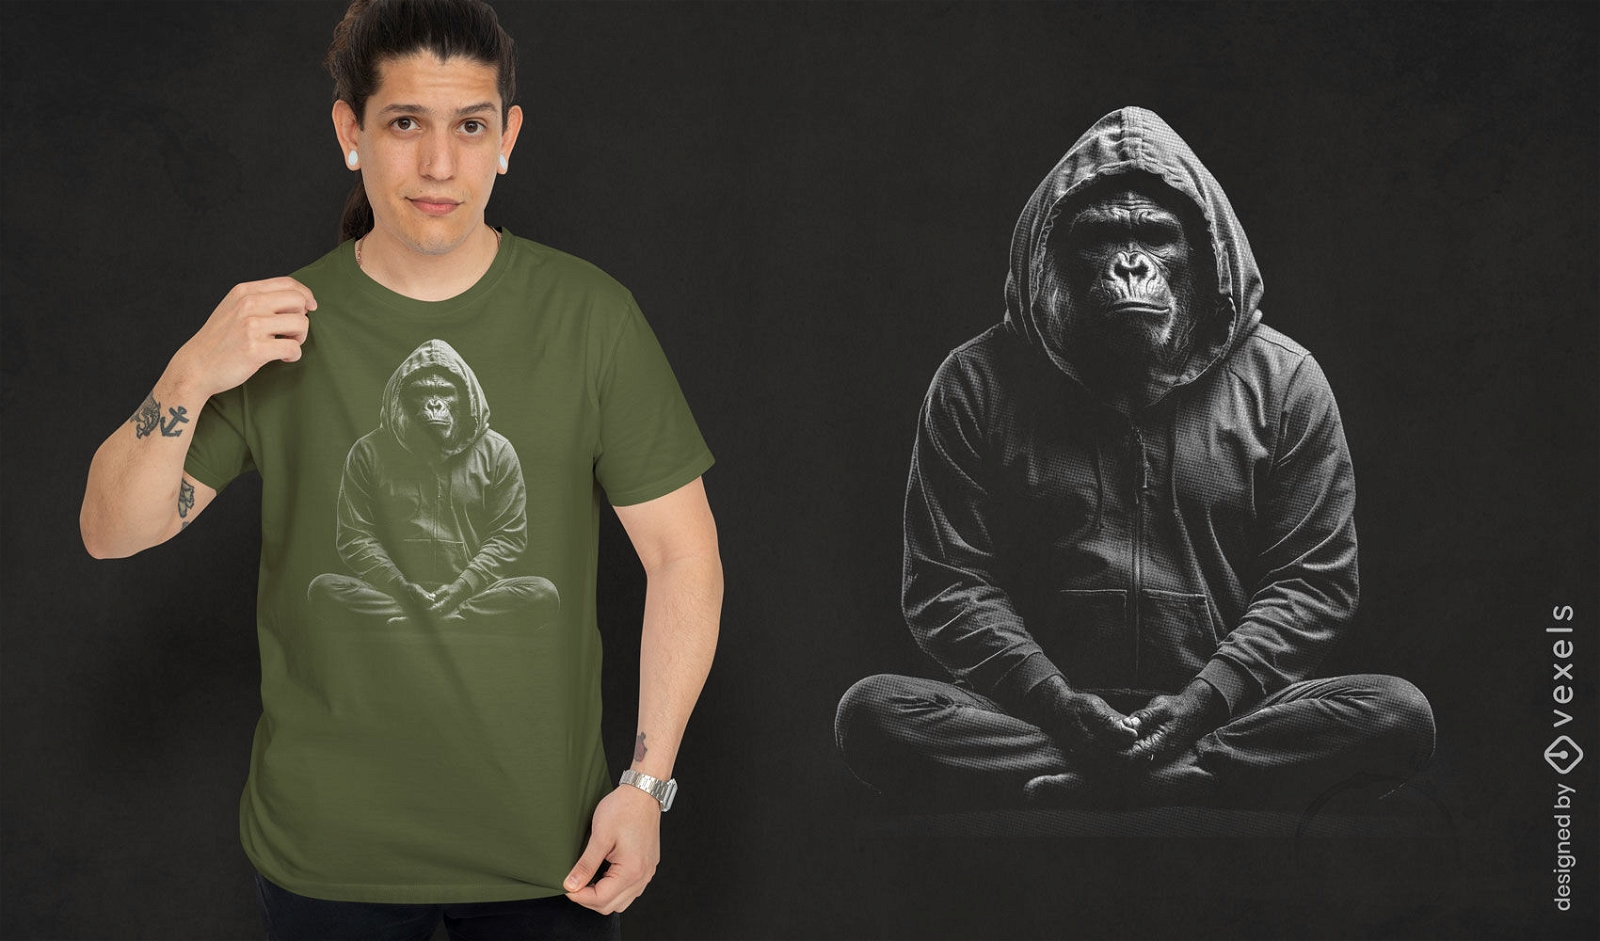 Dise?o de camiseta de gorila meditando.